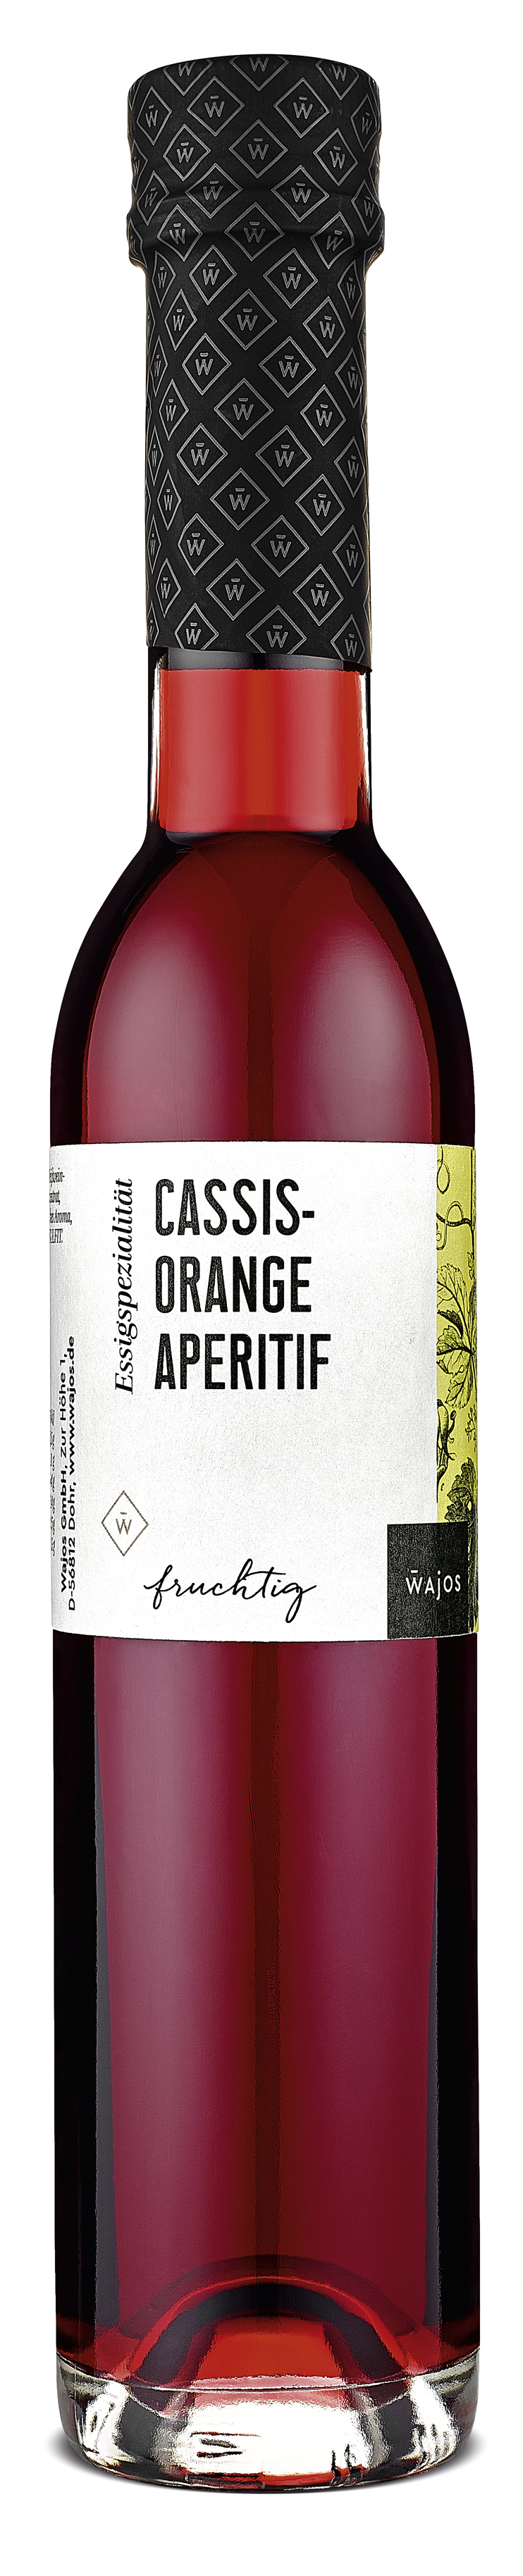 Cassis-Orange Aperitif 250ml